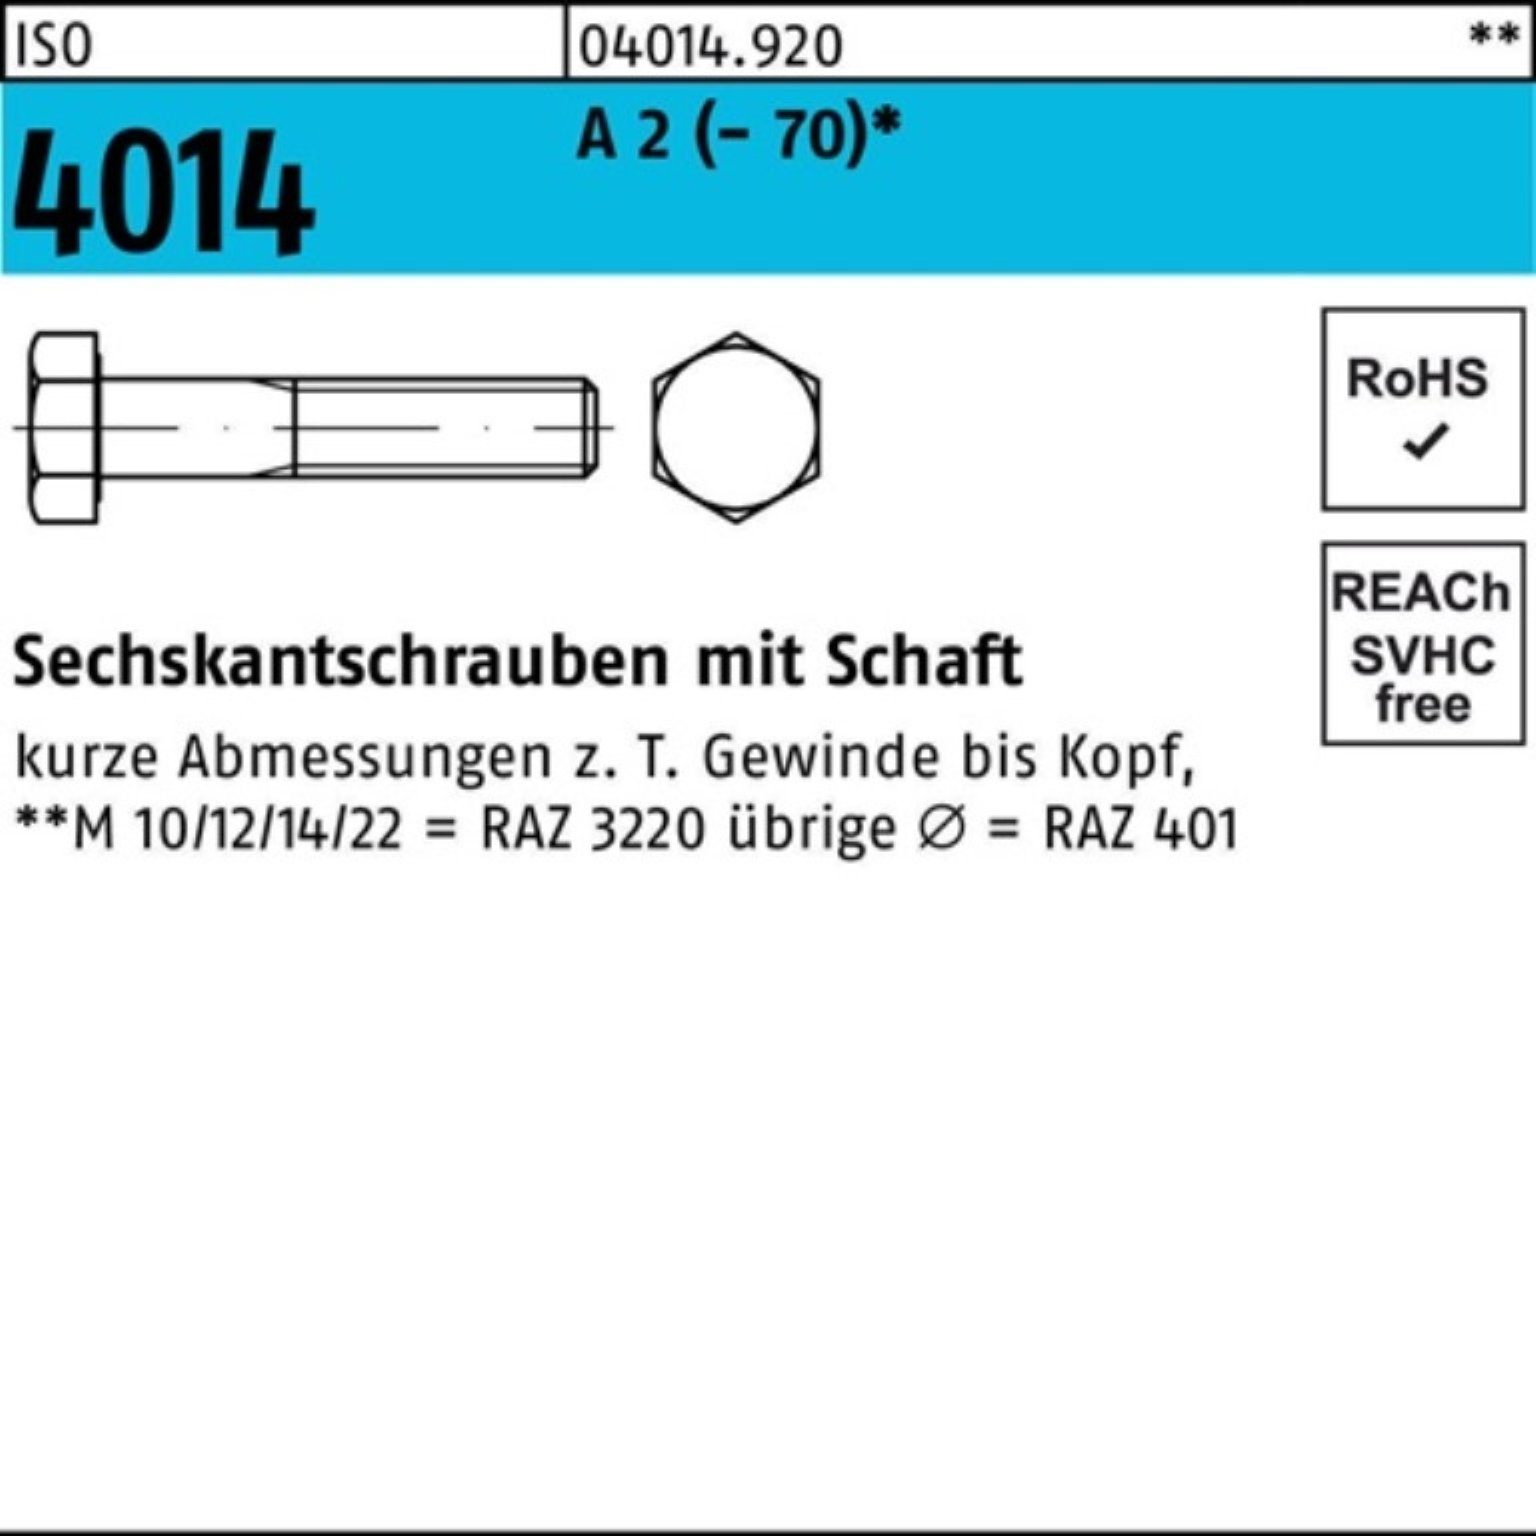 Bufab Sechskantschraube 100er Pack Sechskantschraube ISO 4014 Schaft M12x 100 A 2 (70) 50 St